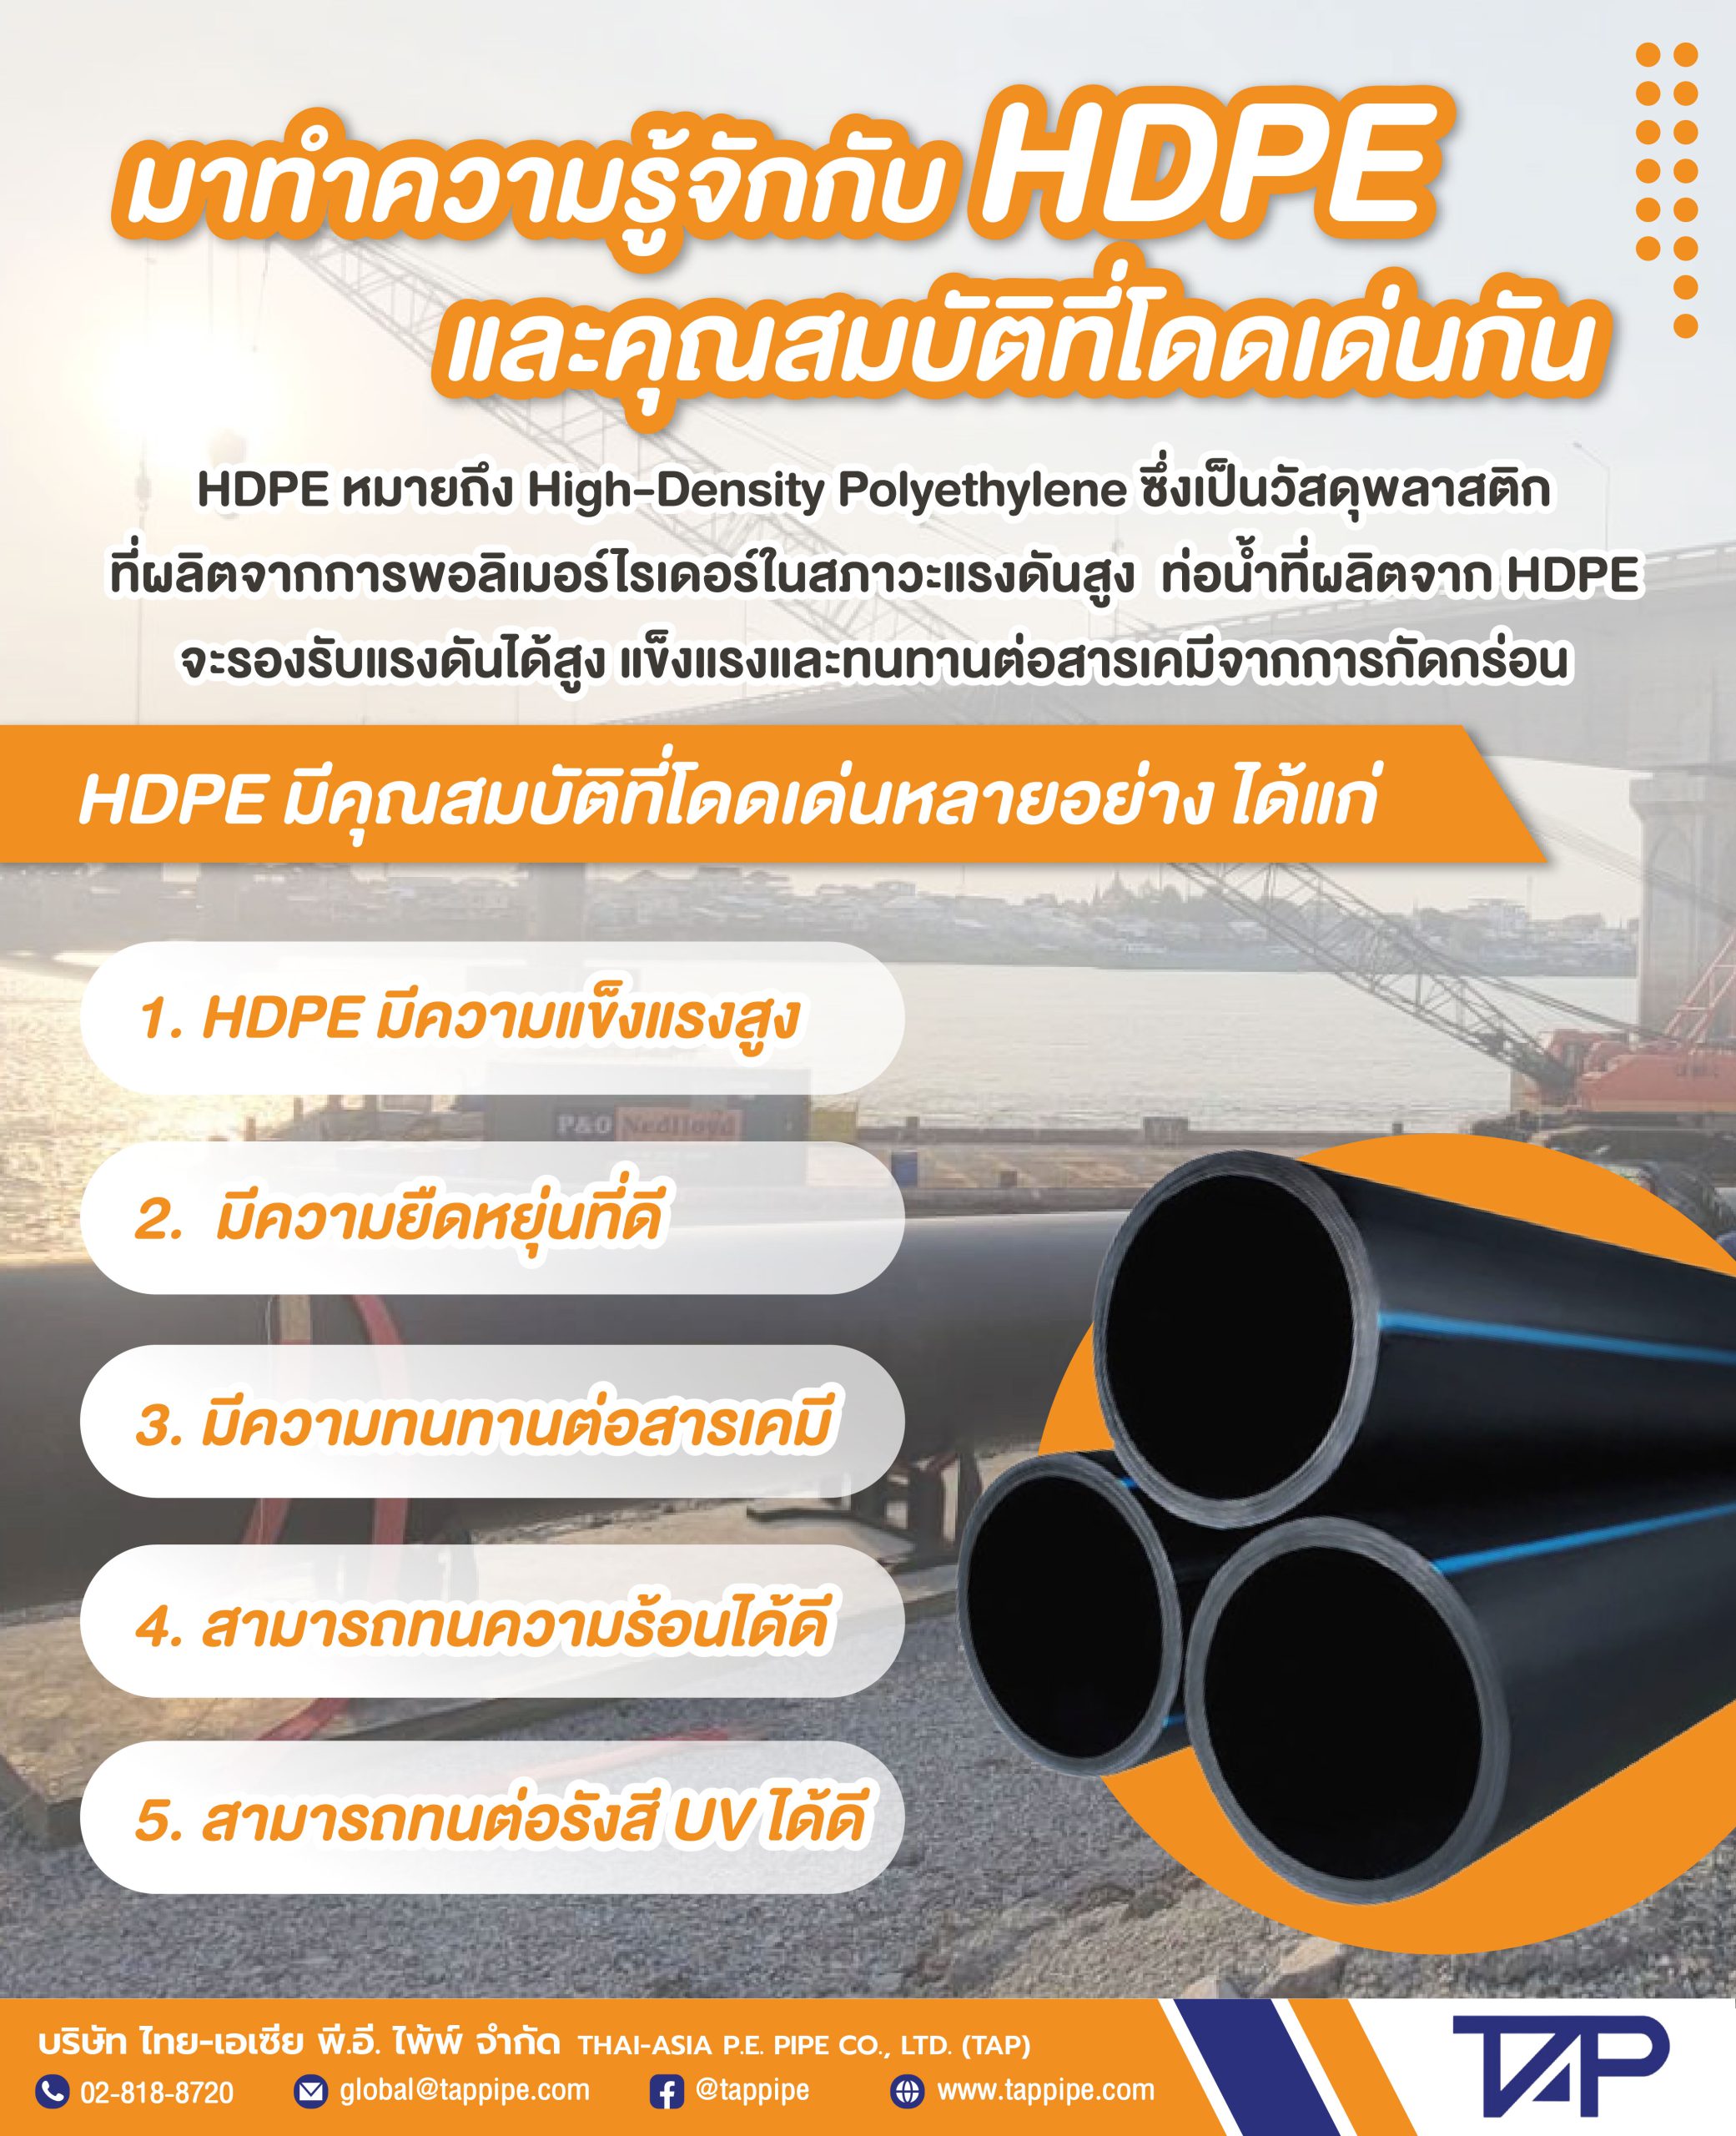 อินโฟกราฟิก: ท่อ HDPE คืออะไร